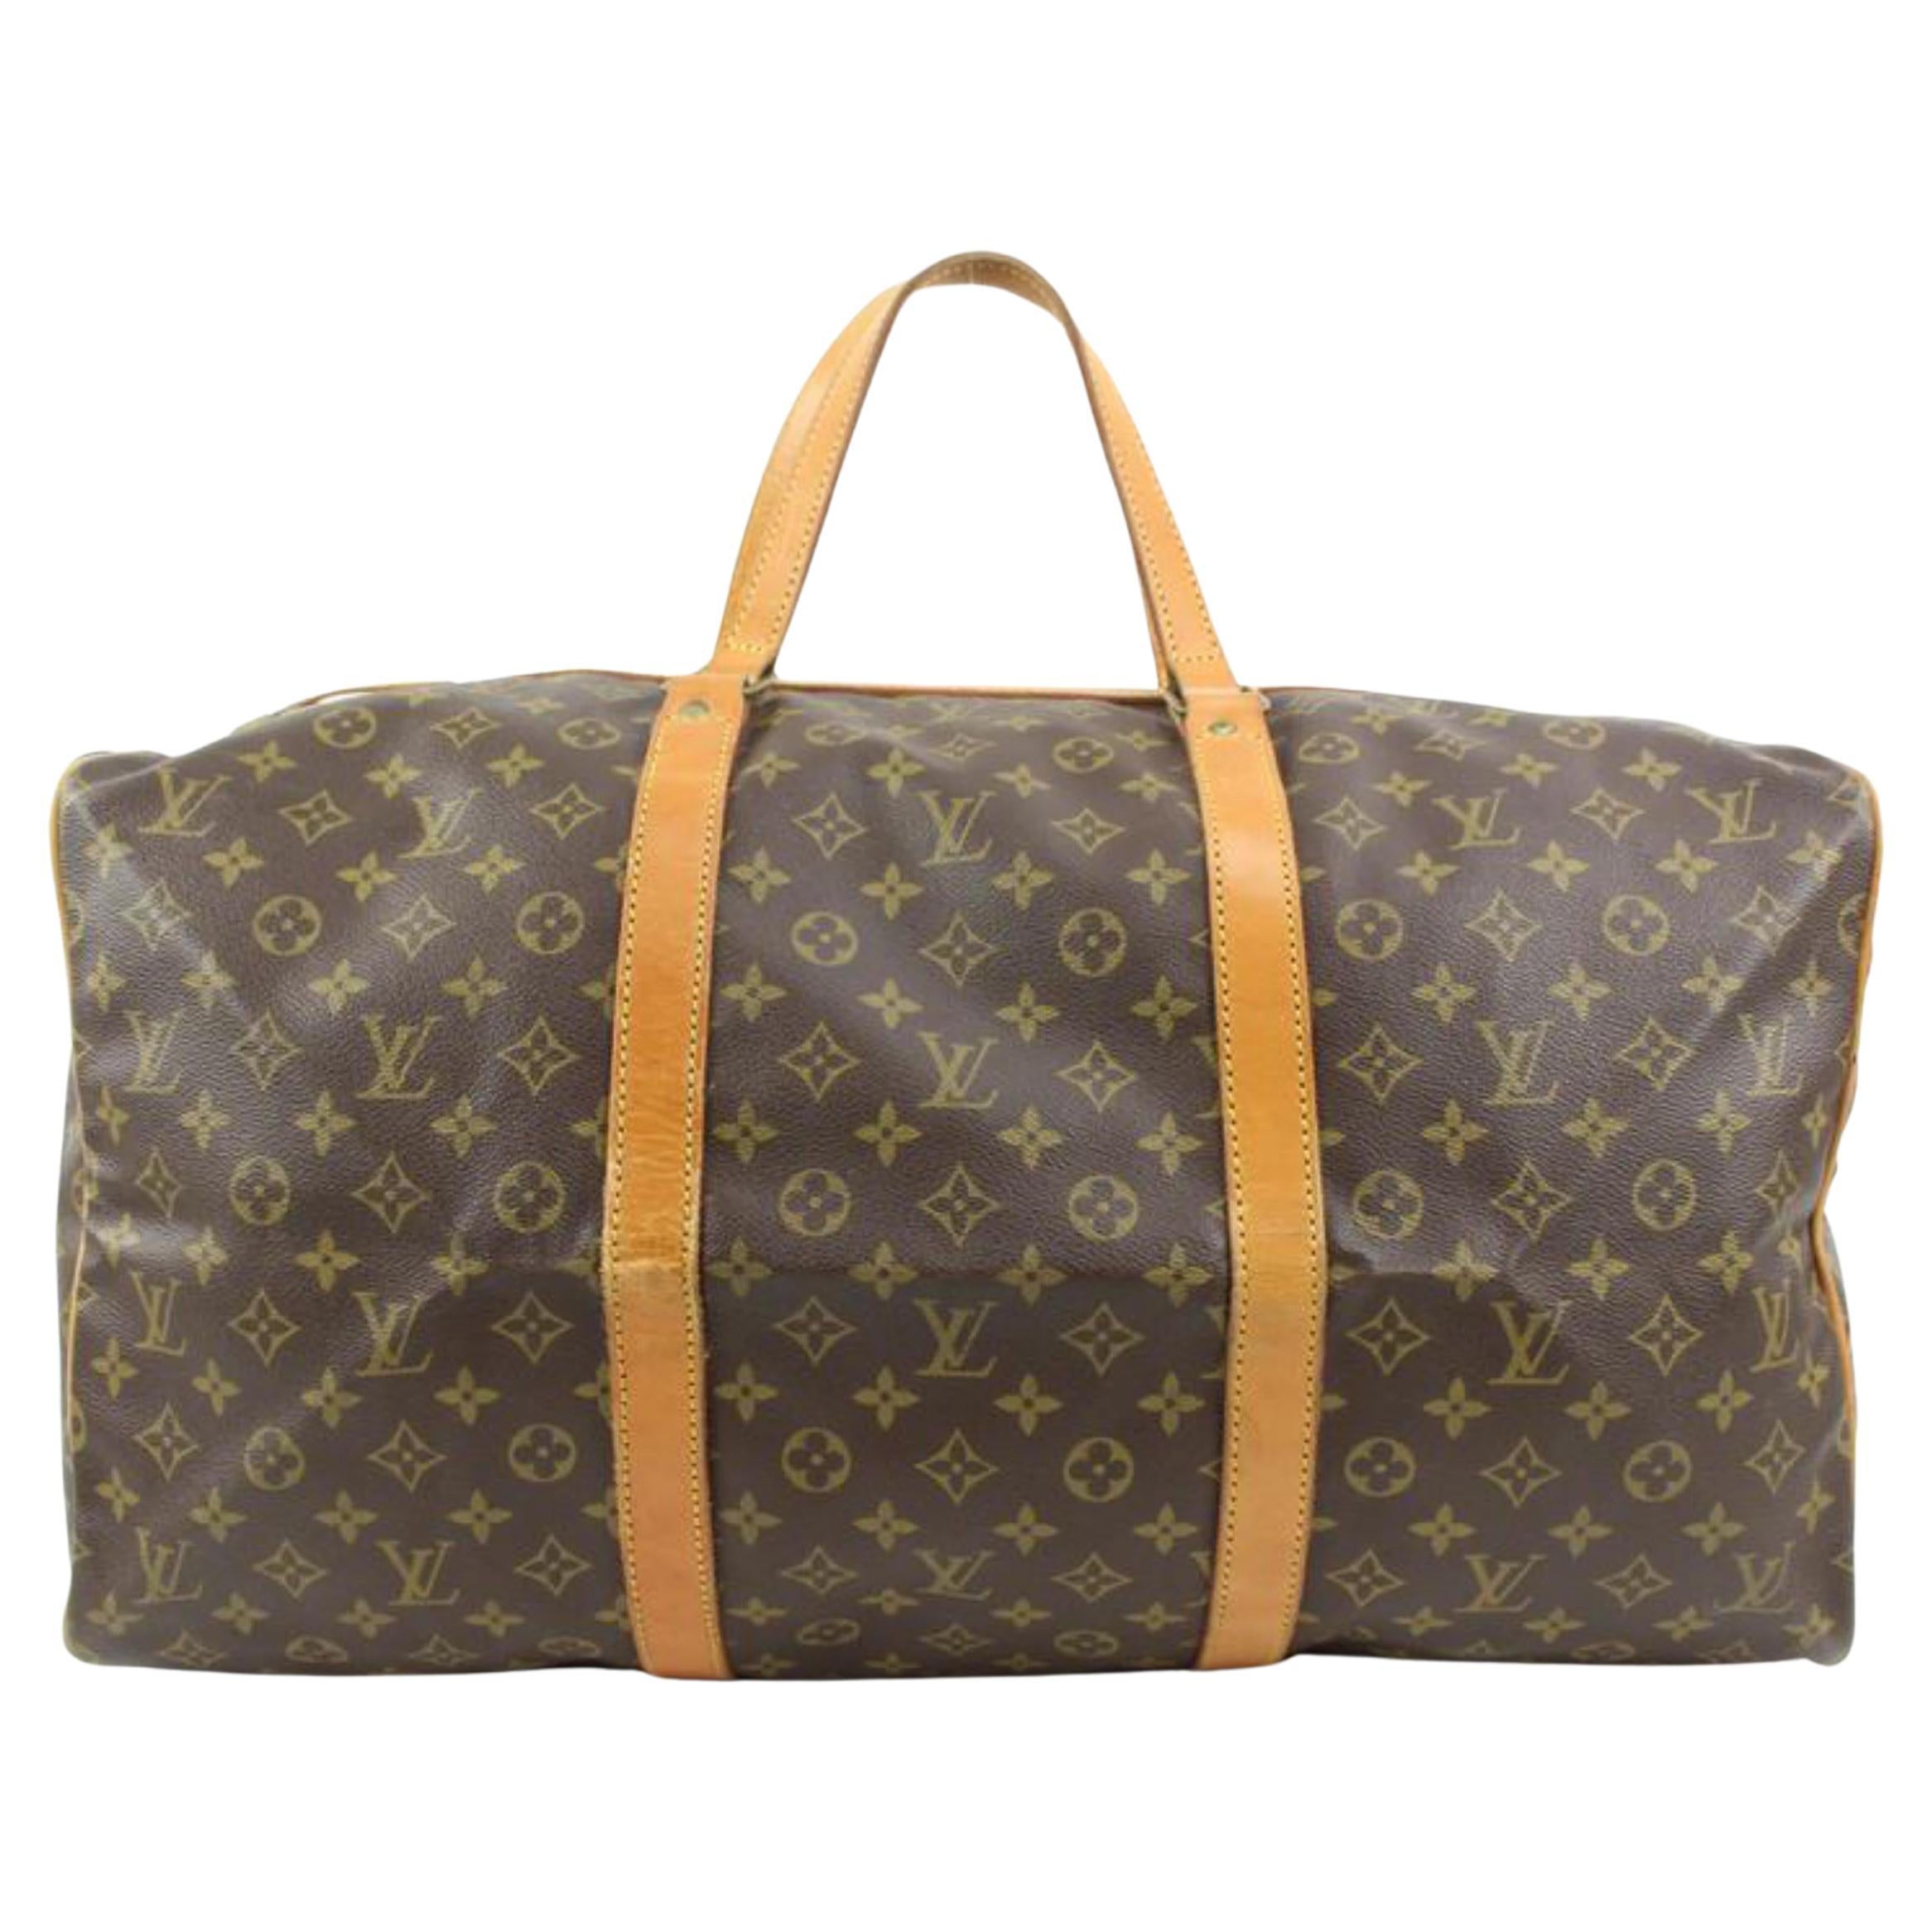 Louis Vuitton Discontinued Monogram Sac Souple 55 Duffle Bag 24lk31s For Sale